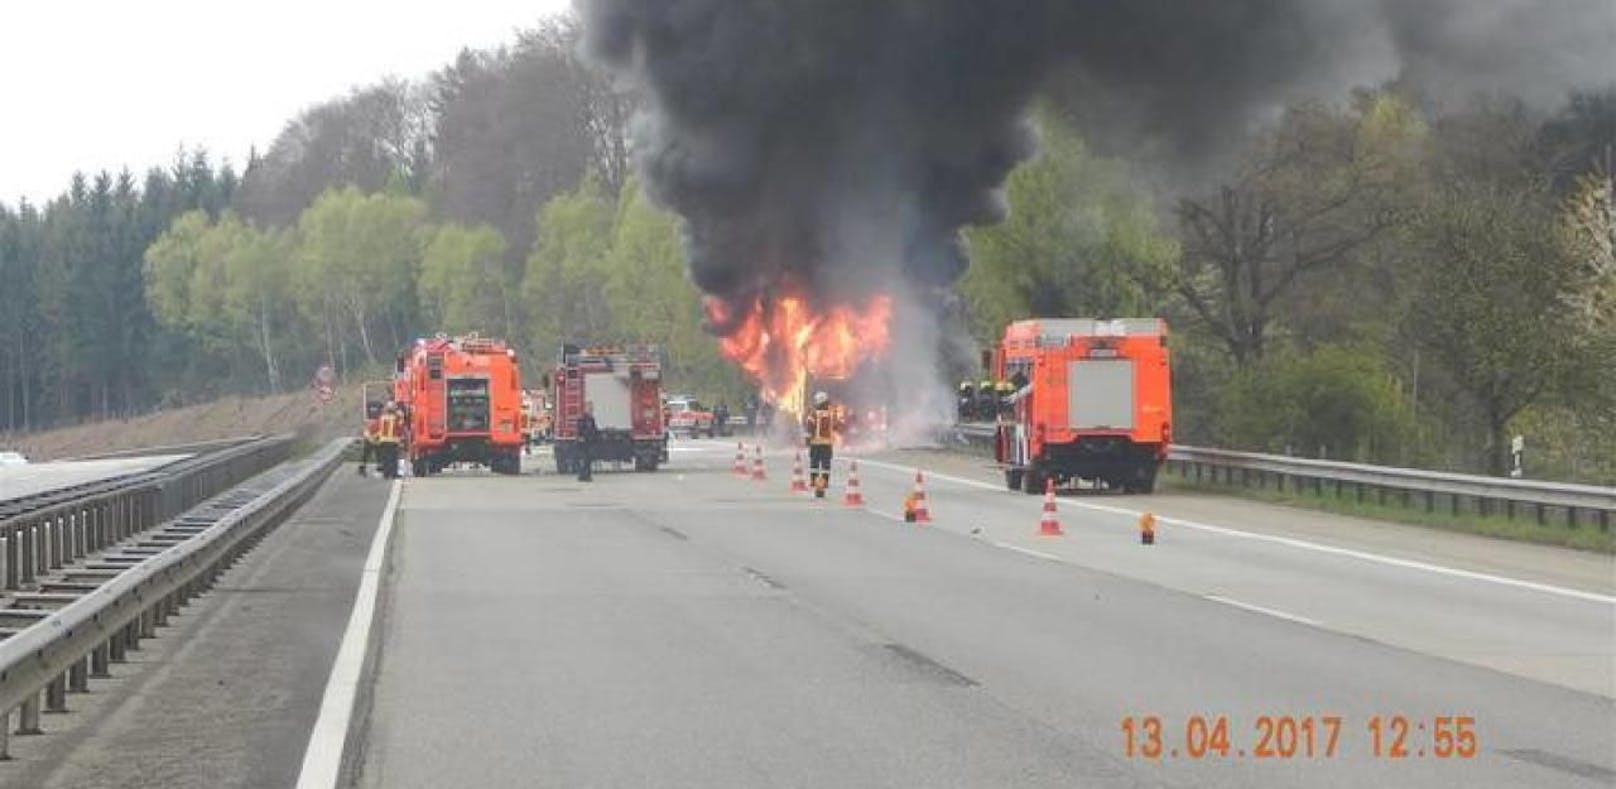 Der Reisebus ging auf der Autobahn in Flammen auf